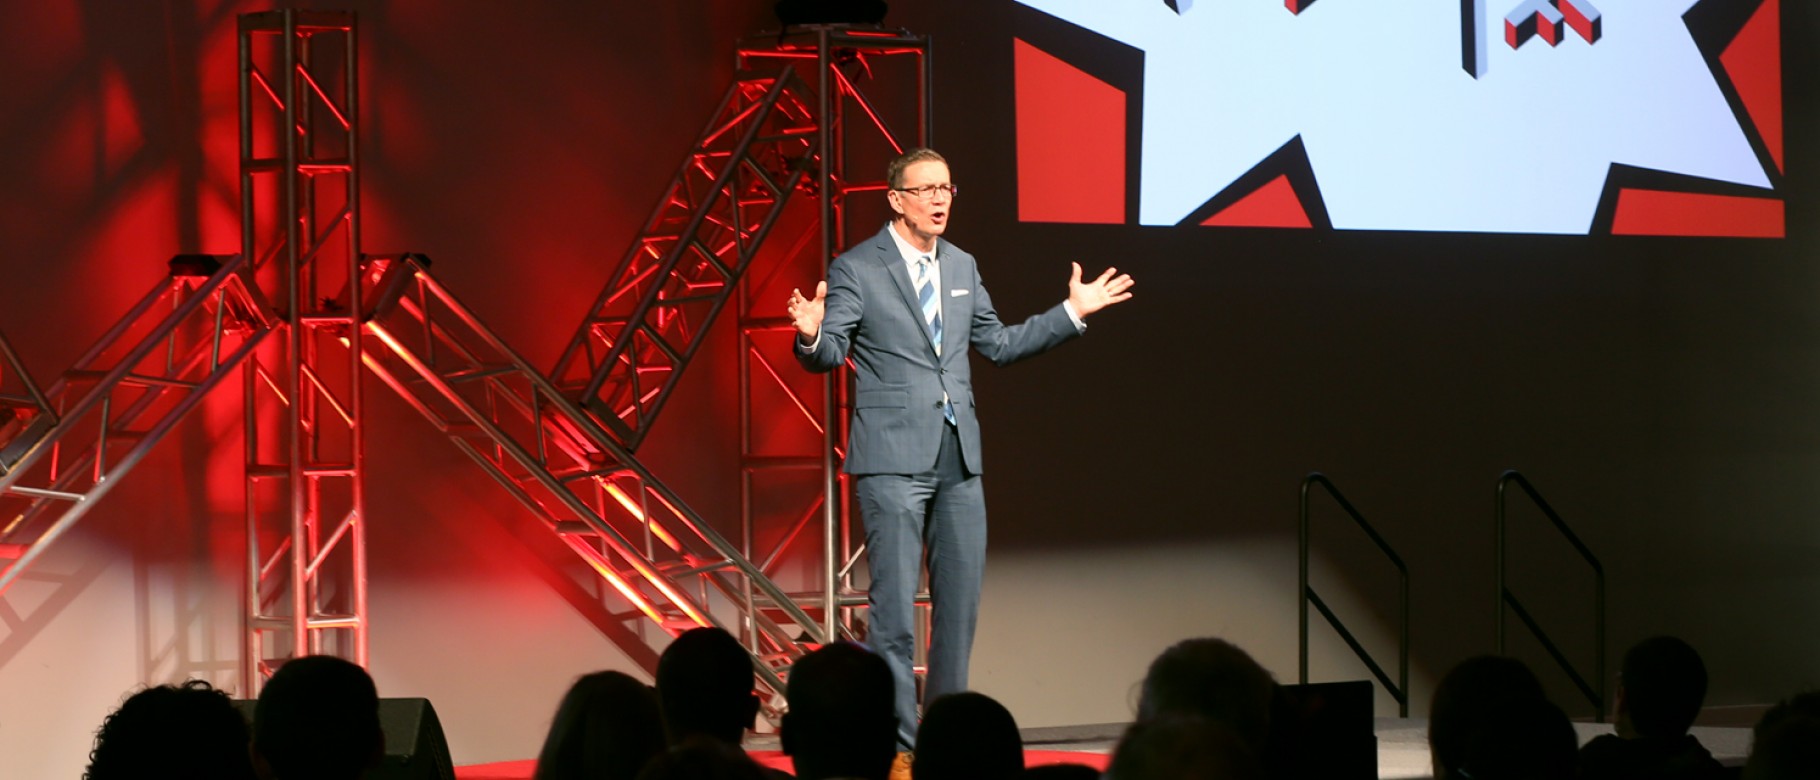 President Herbert speaks at TedxDirigo